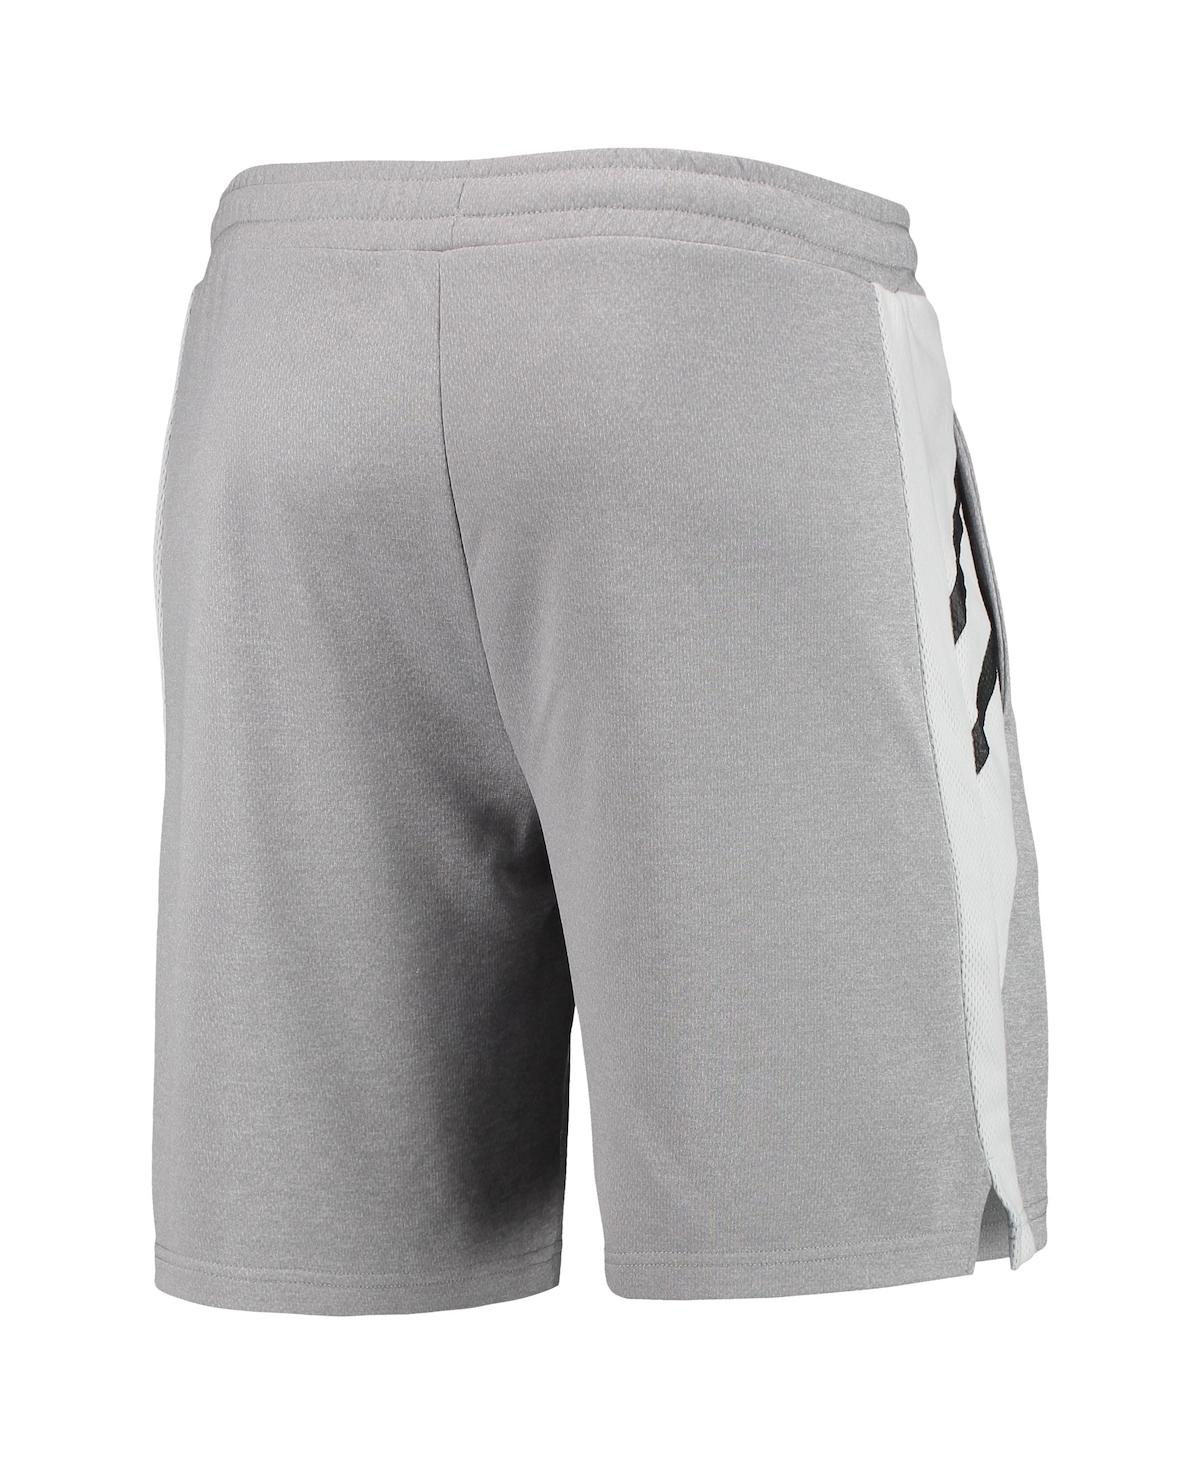 Shop Concepts Sport Men's  Gray Brooklyn Nets Stature Shorts